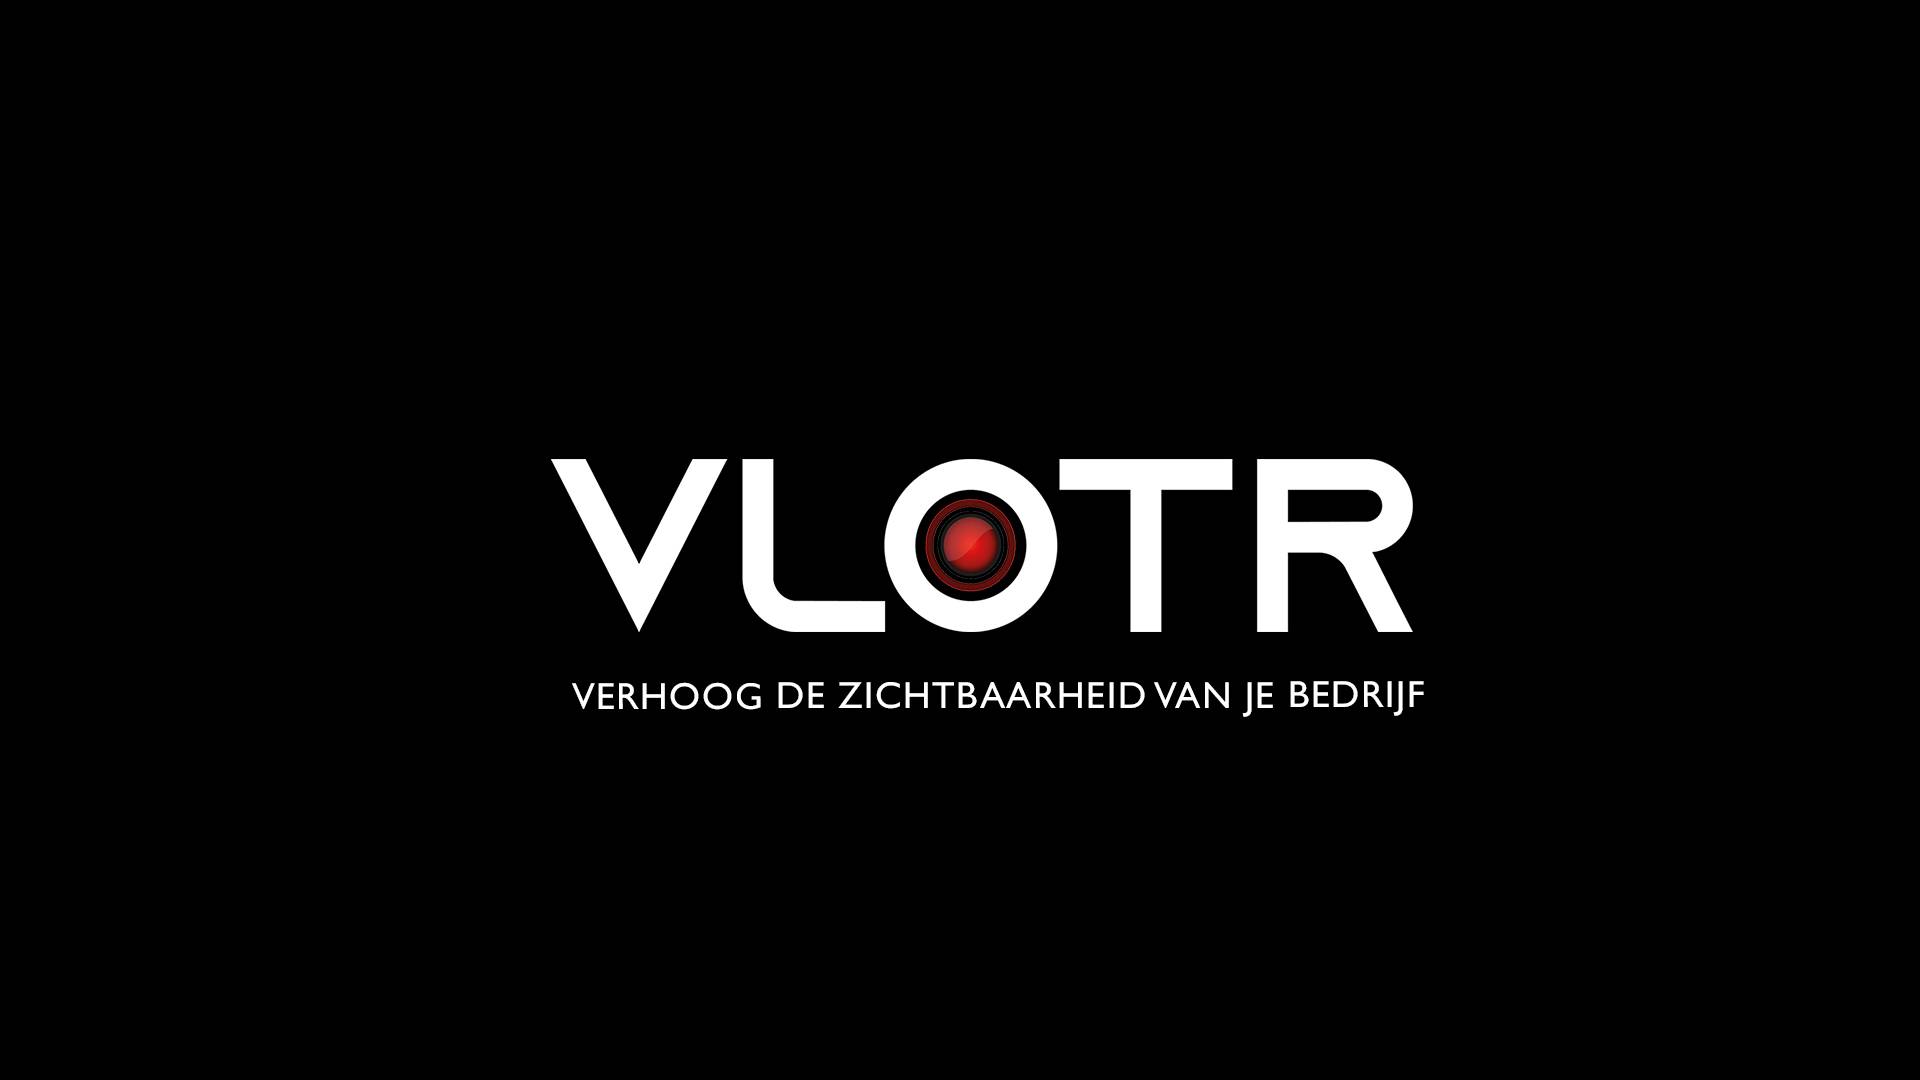 (c) Vlotr.com